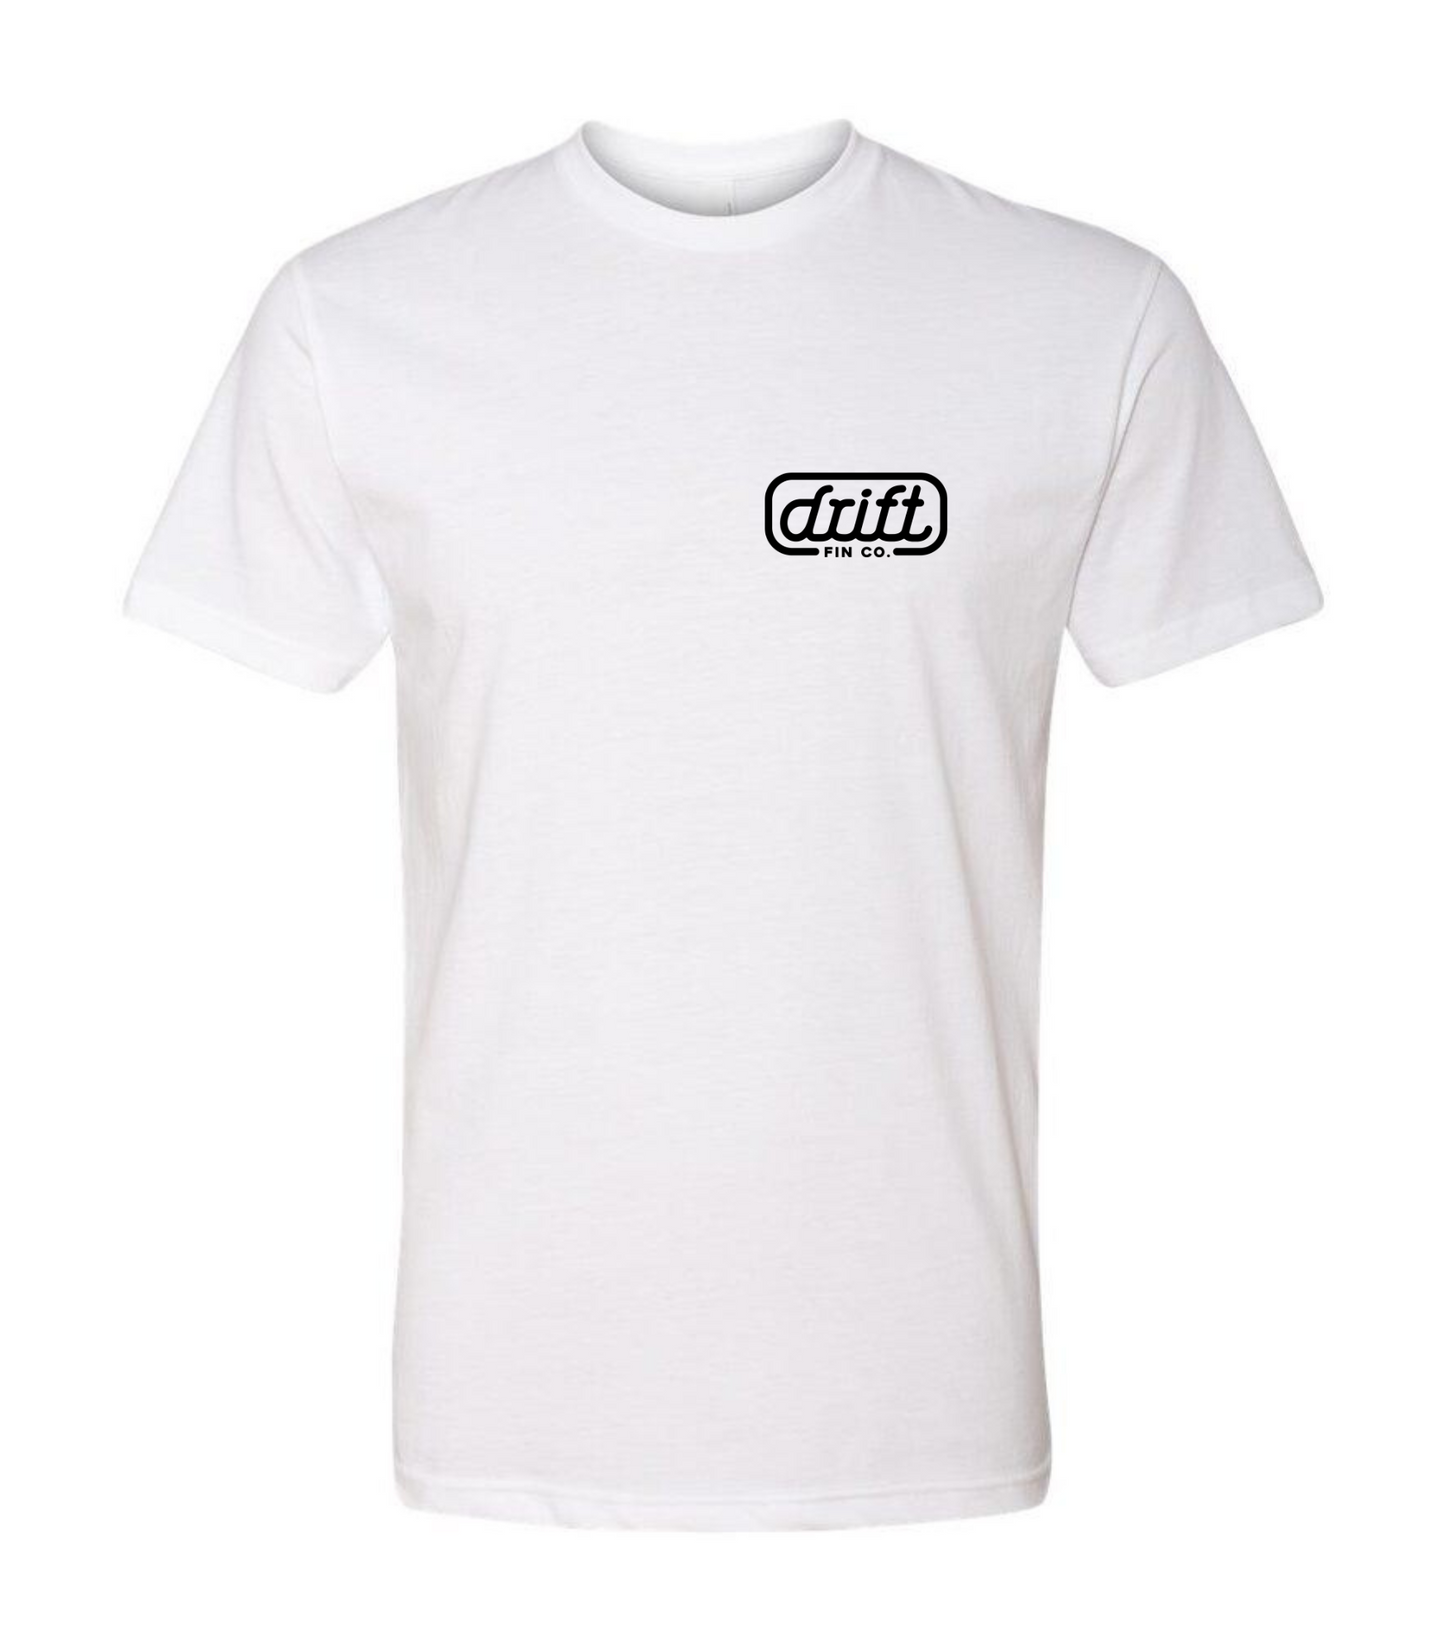 Drift Fin Co. T-Shirt - T-Shirt